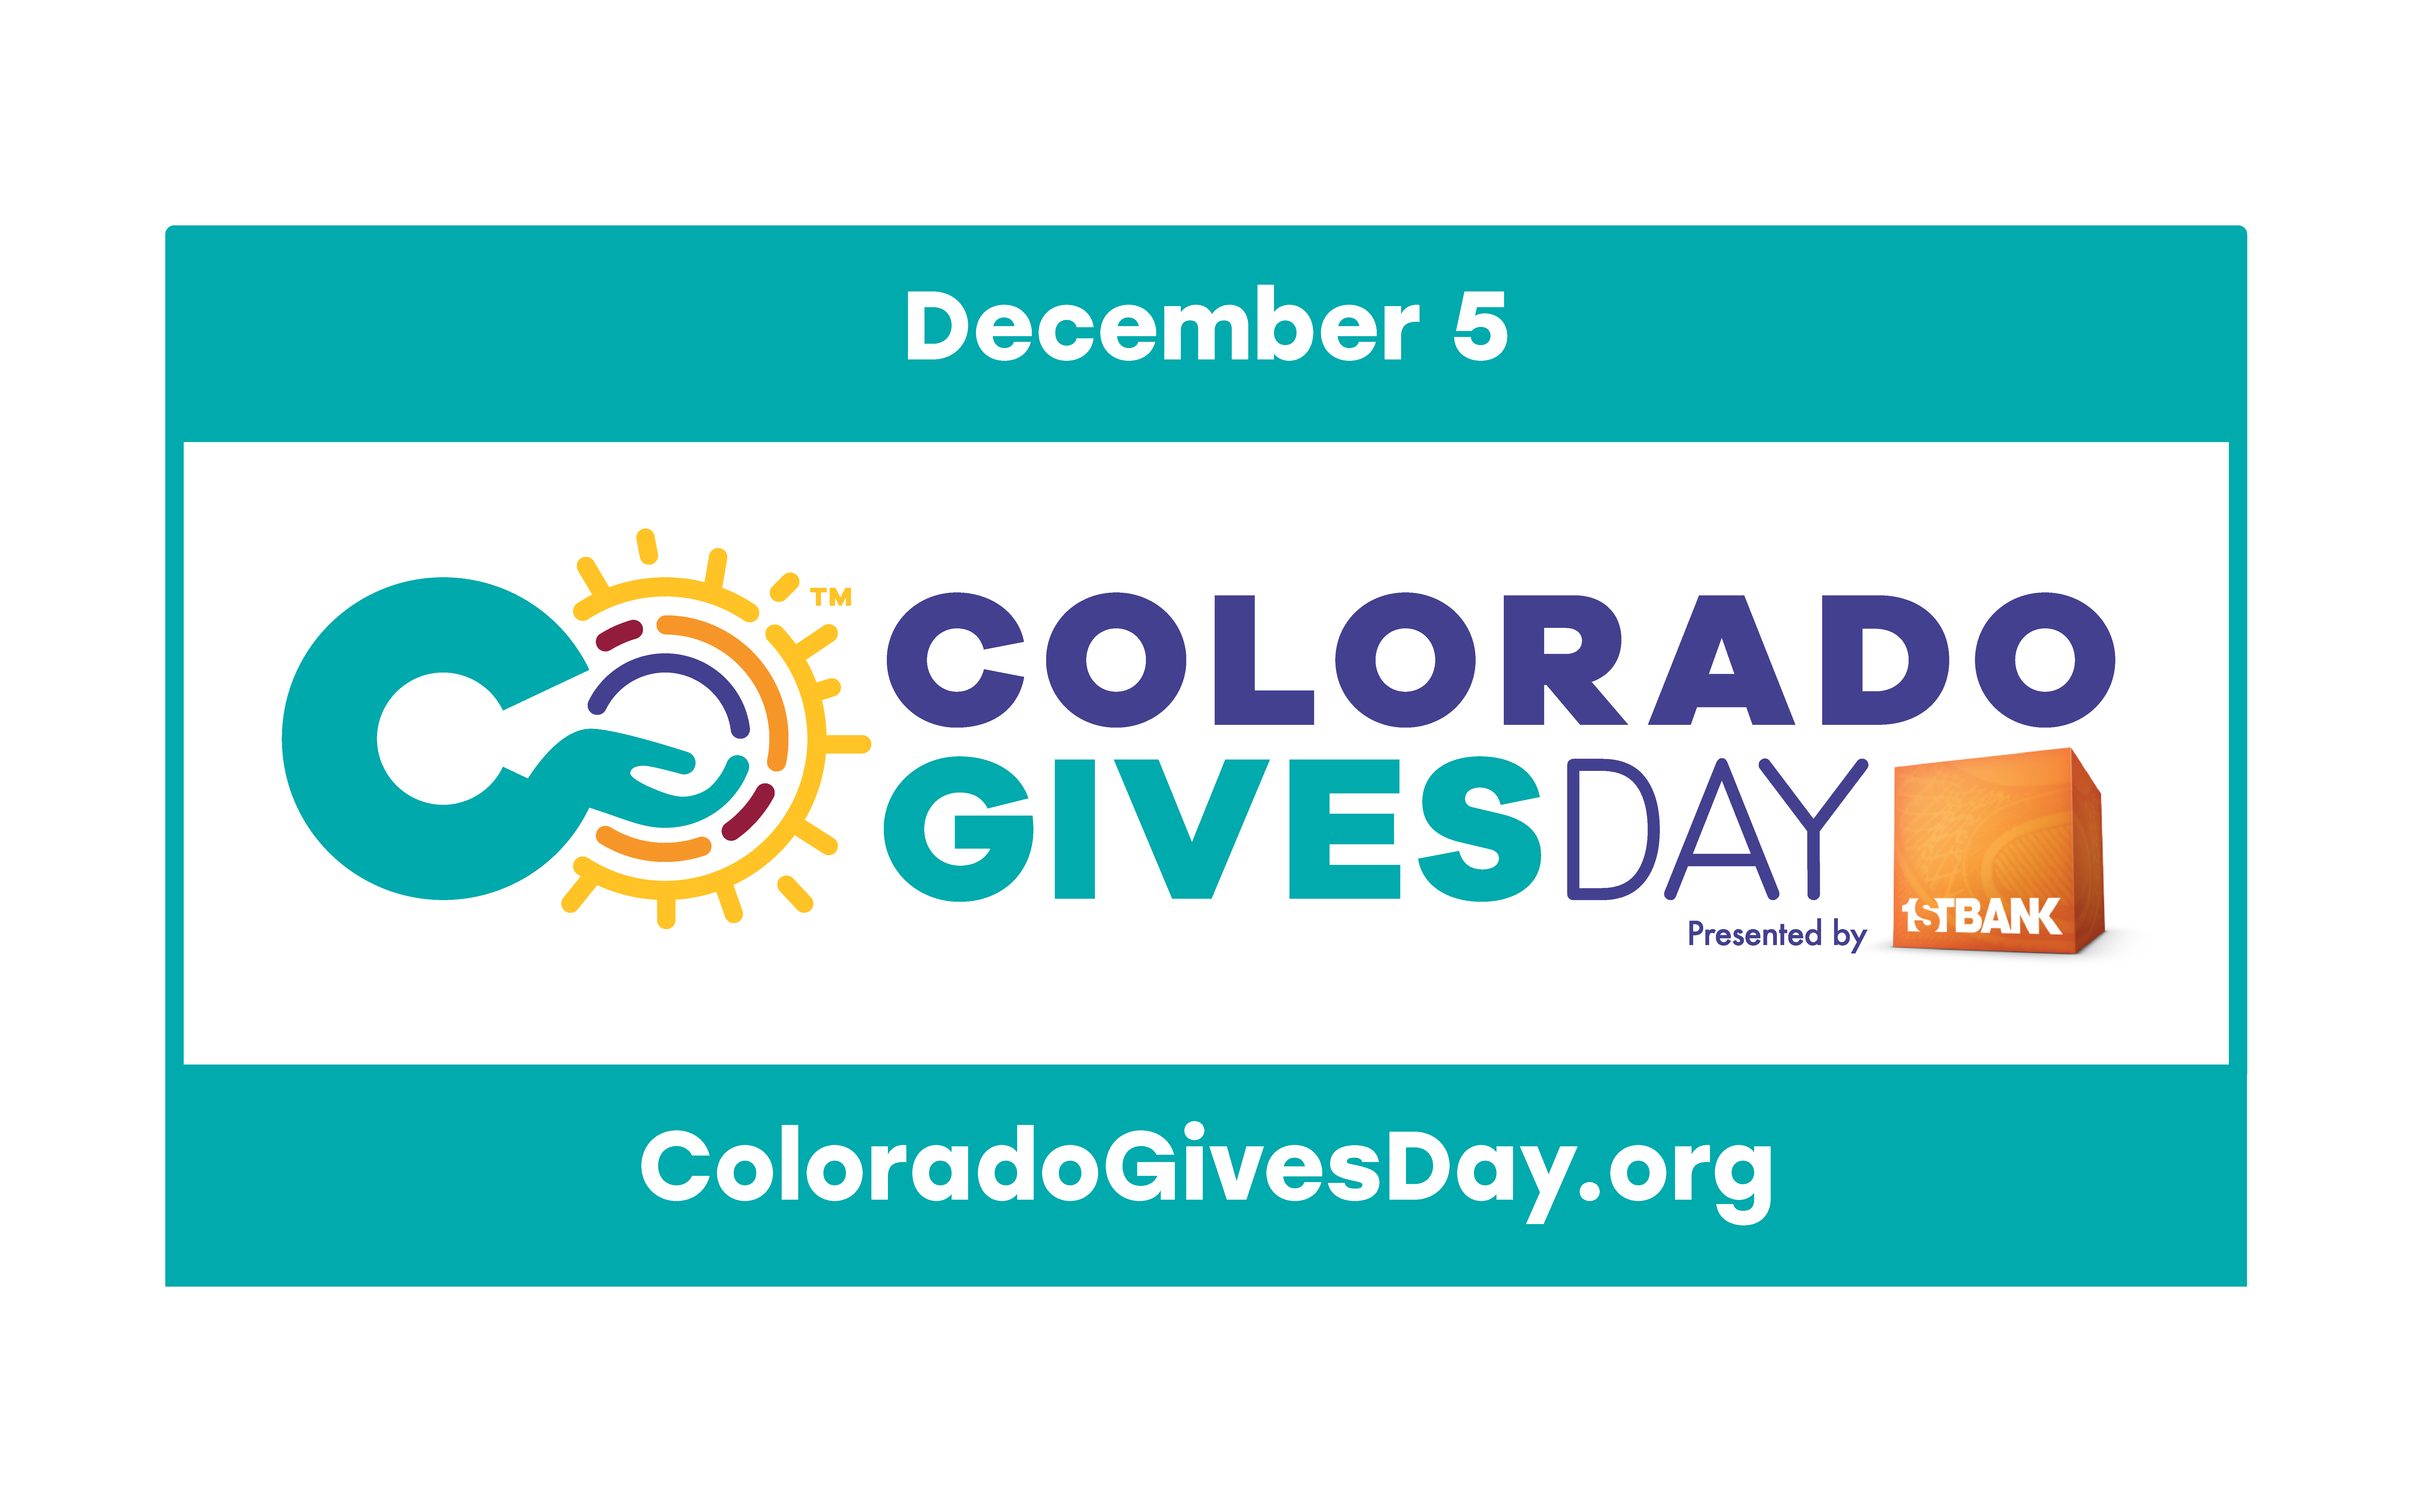 
Colorado Gives Day